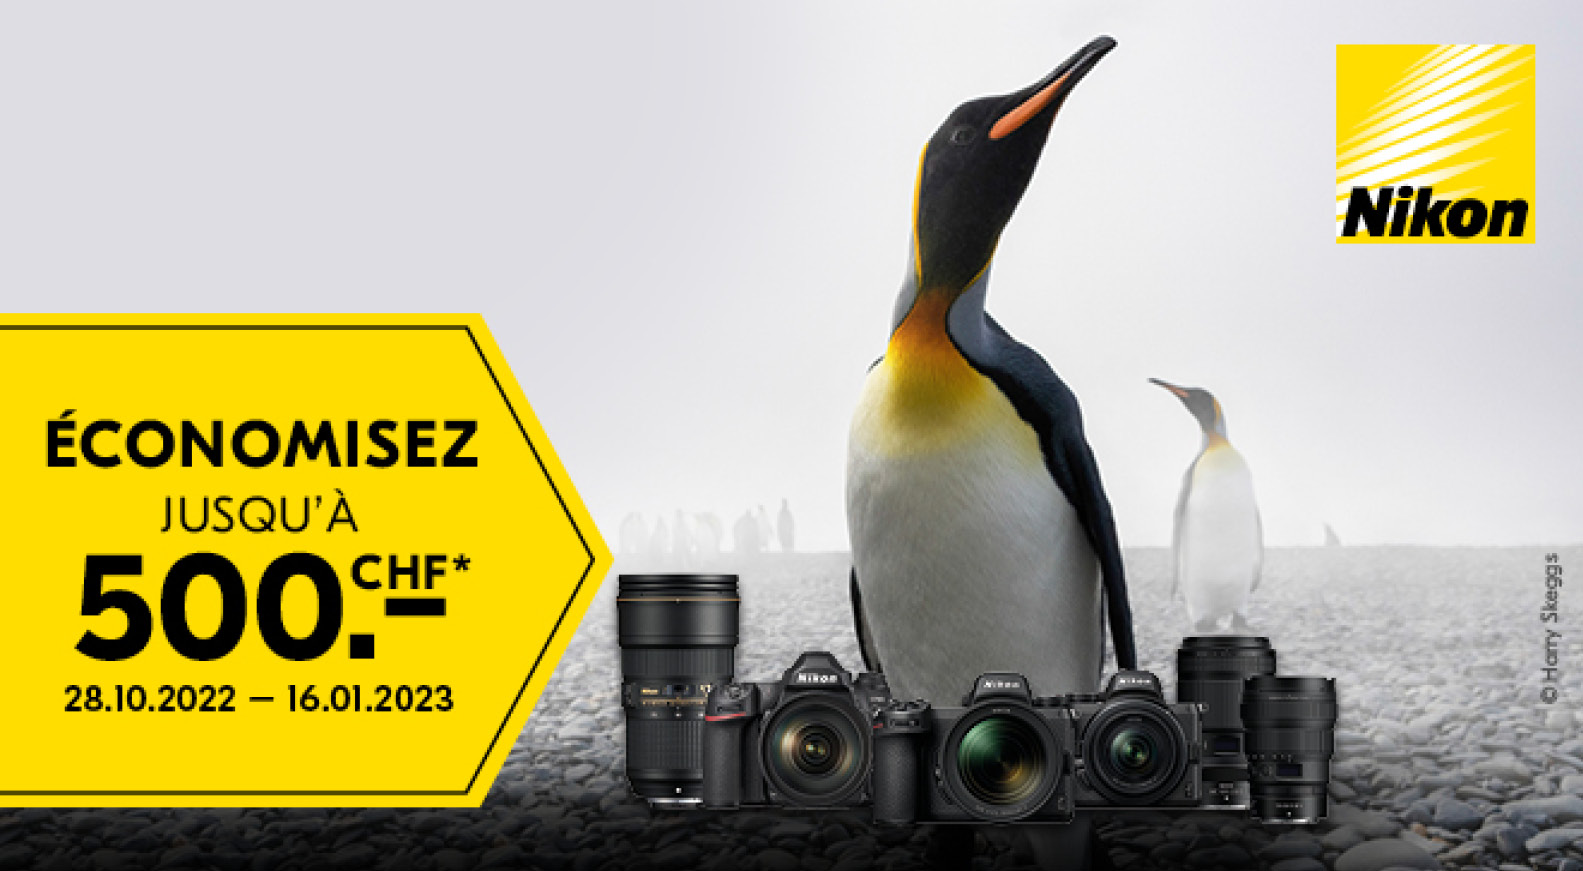 Action de remise immédiate Nikon hiver 2022/23 